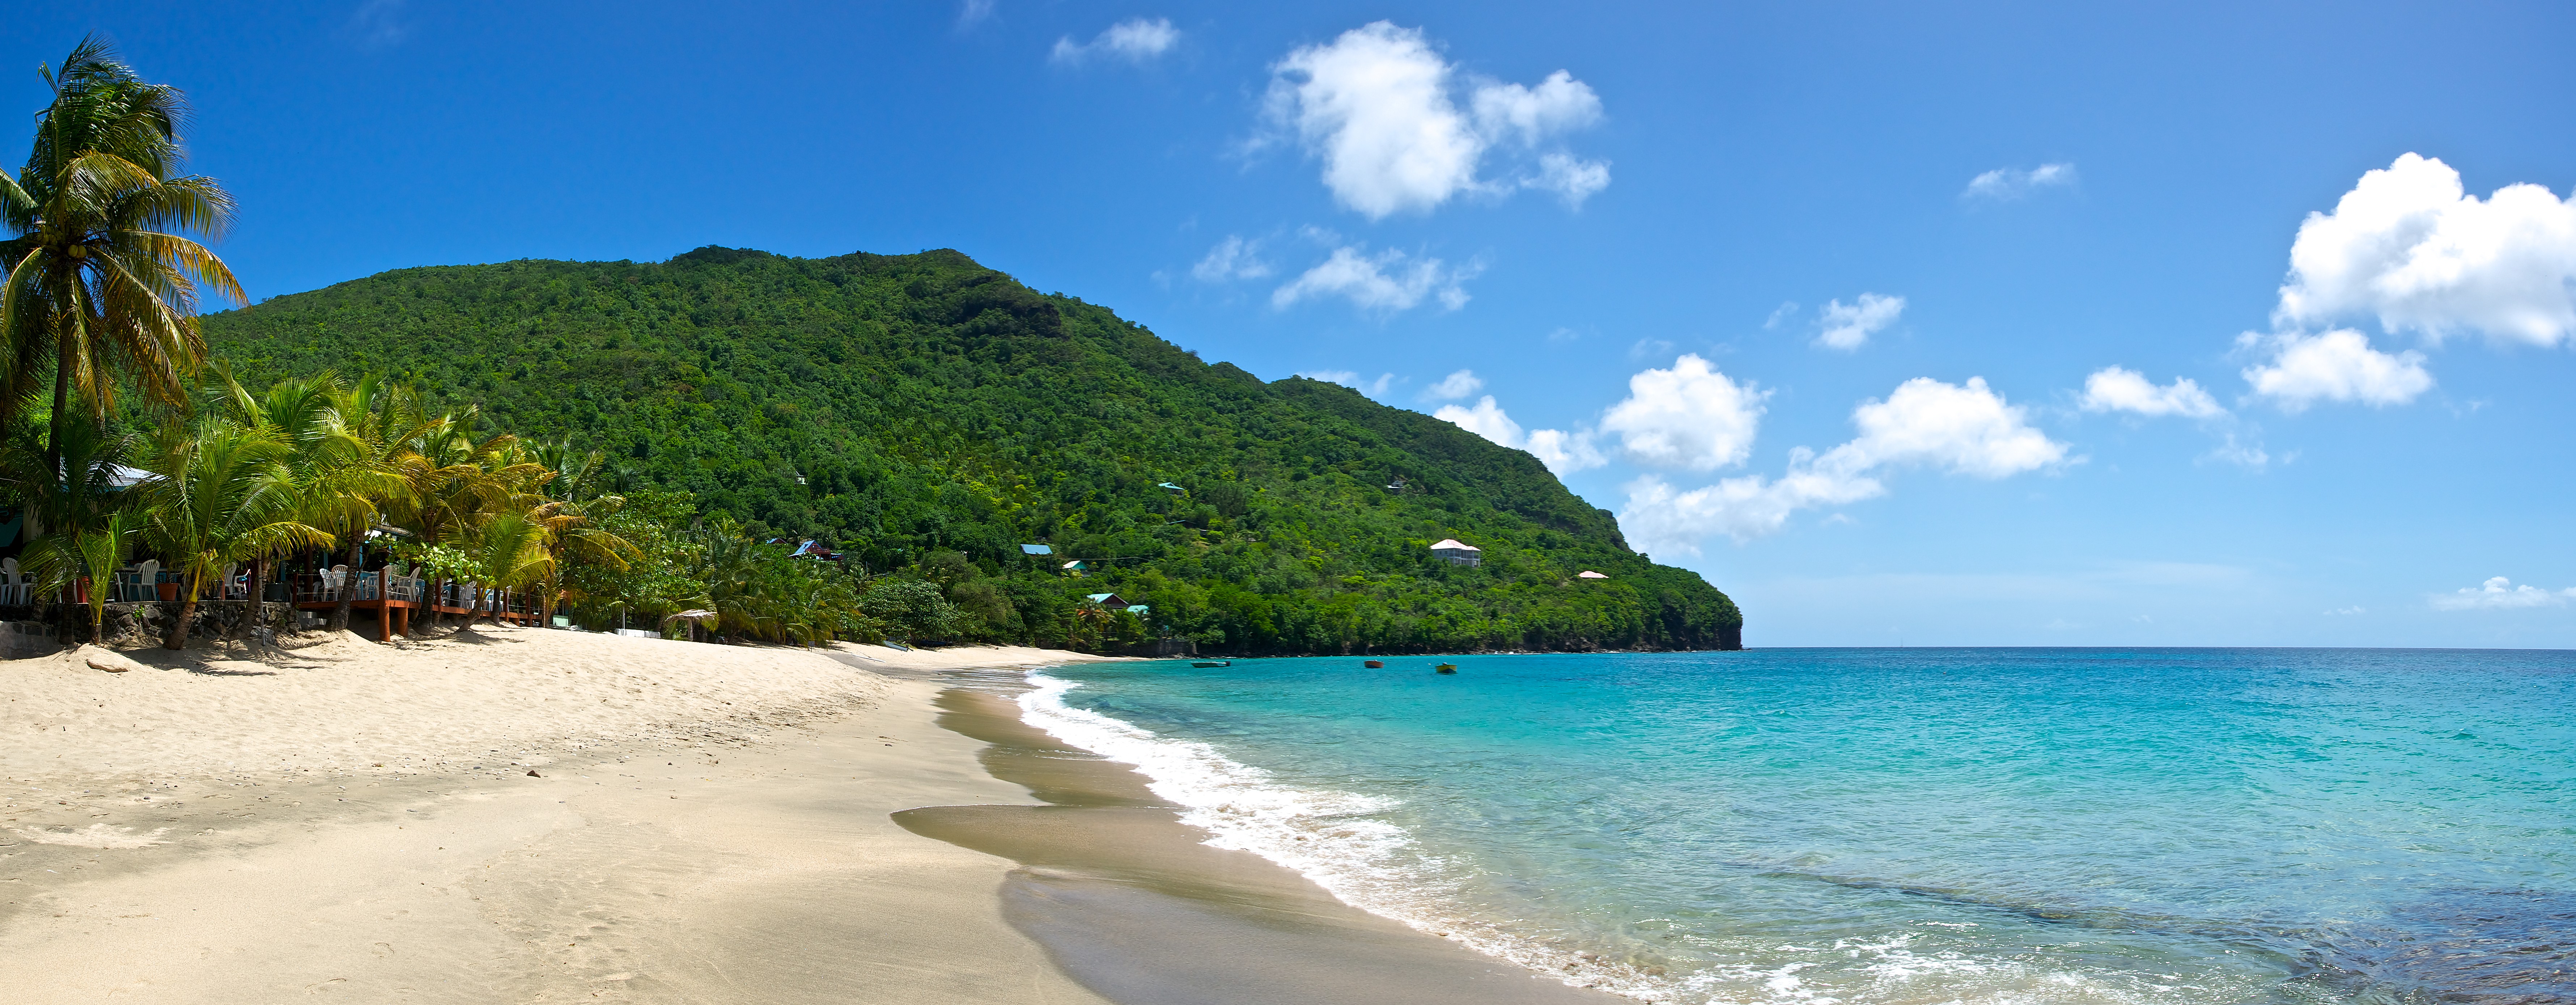 5 raisons de visiter Saint-Vincent-et-les Grenadines 